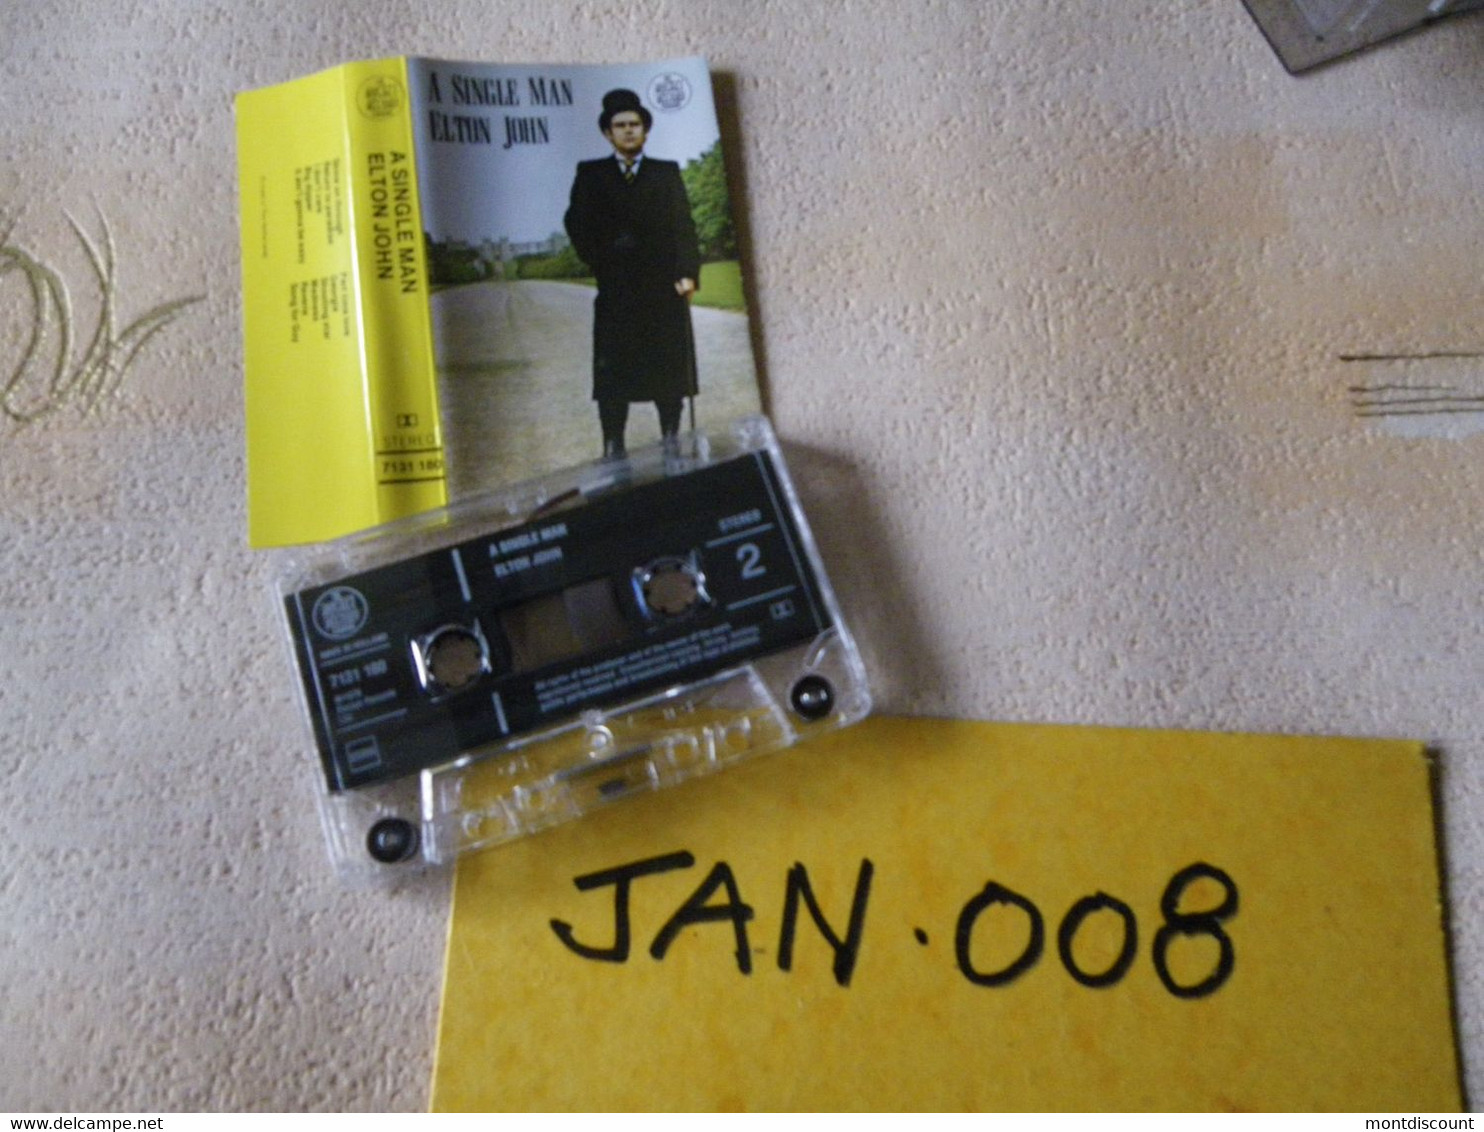 ELTON JOHN K7 AUDIO VOIR PHOTO...ET REGARDEZ LES AUTRES (PLUSIEURS) (JAN 008) - Cassettes Audio